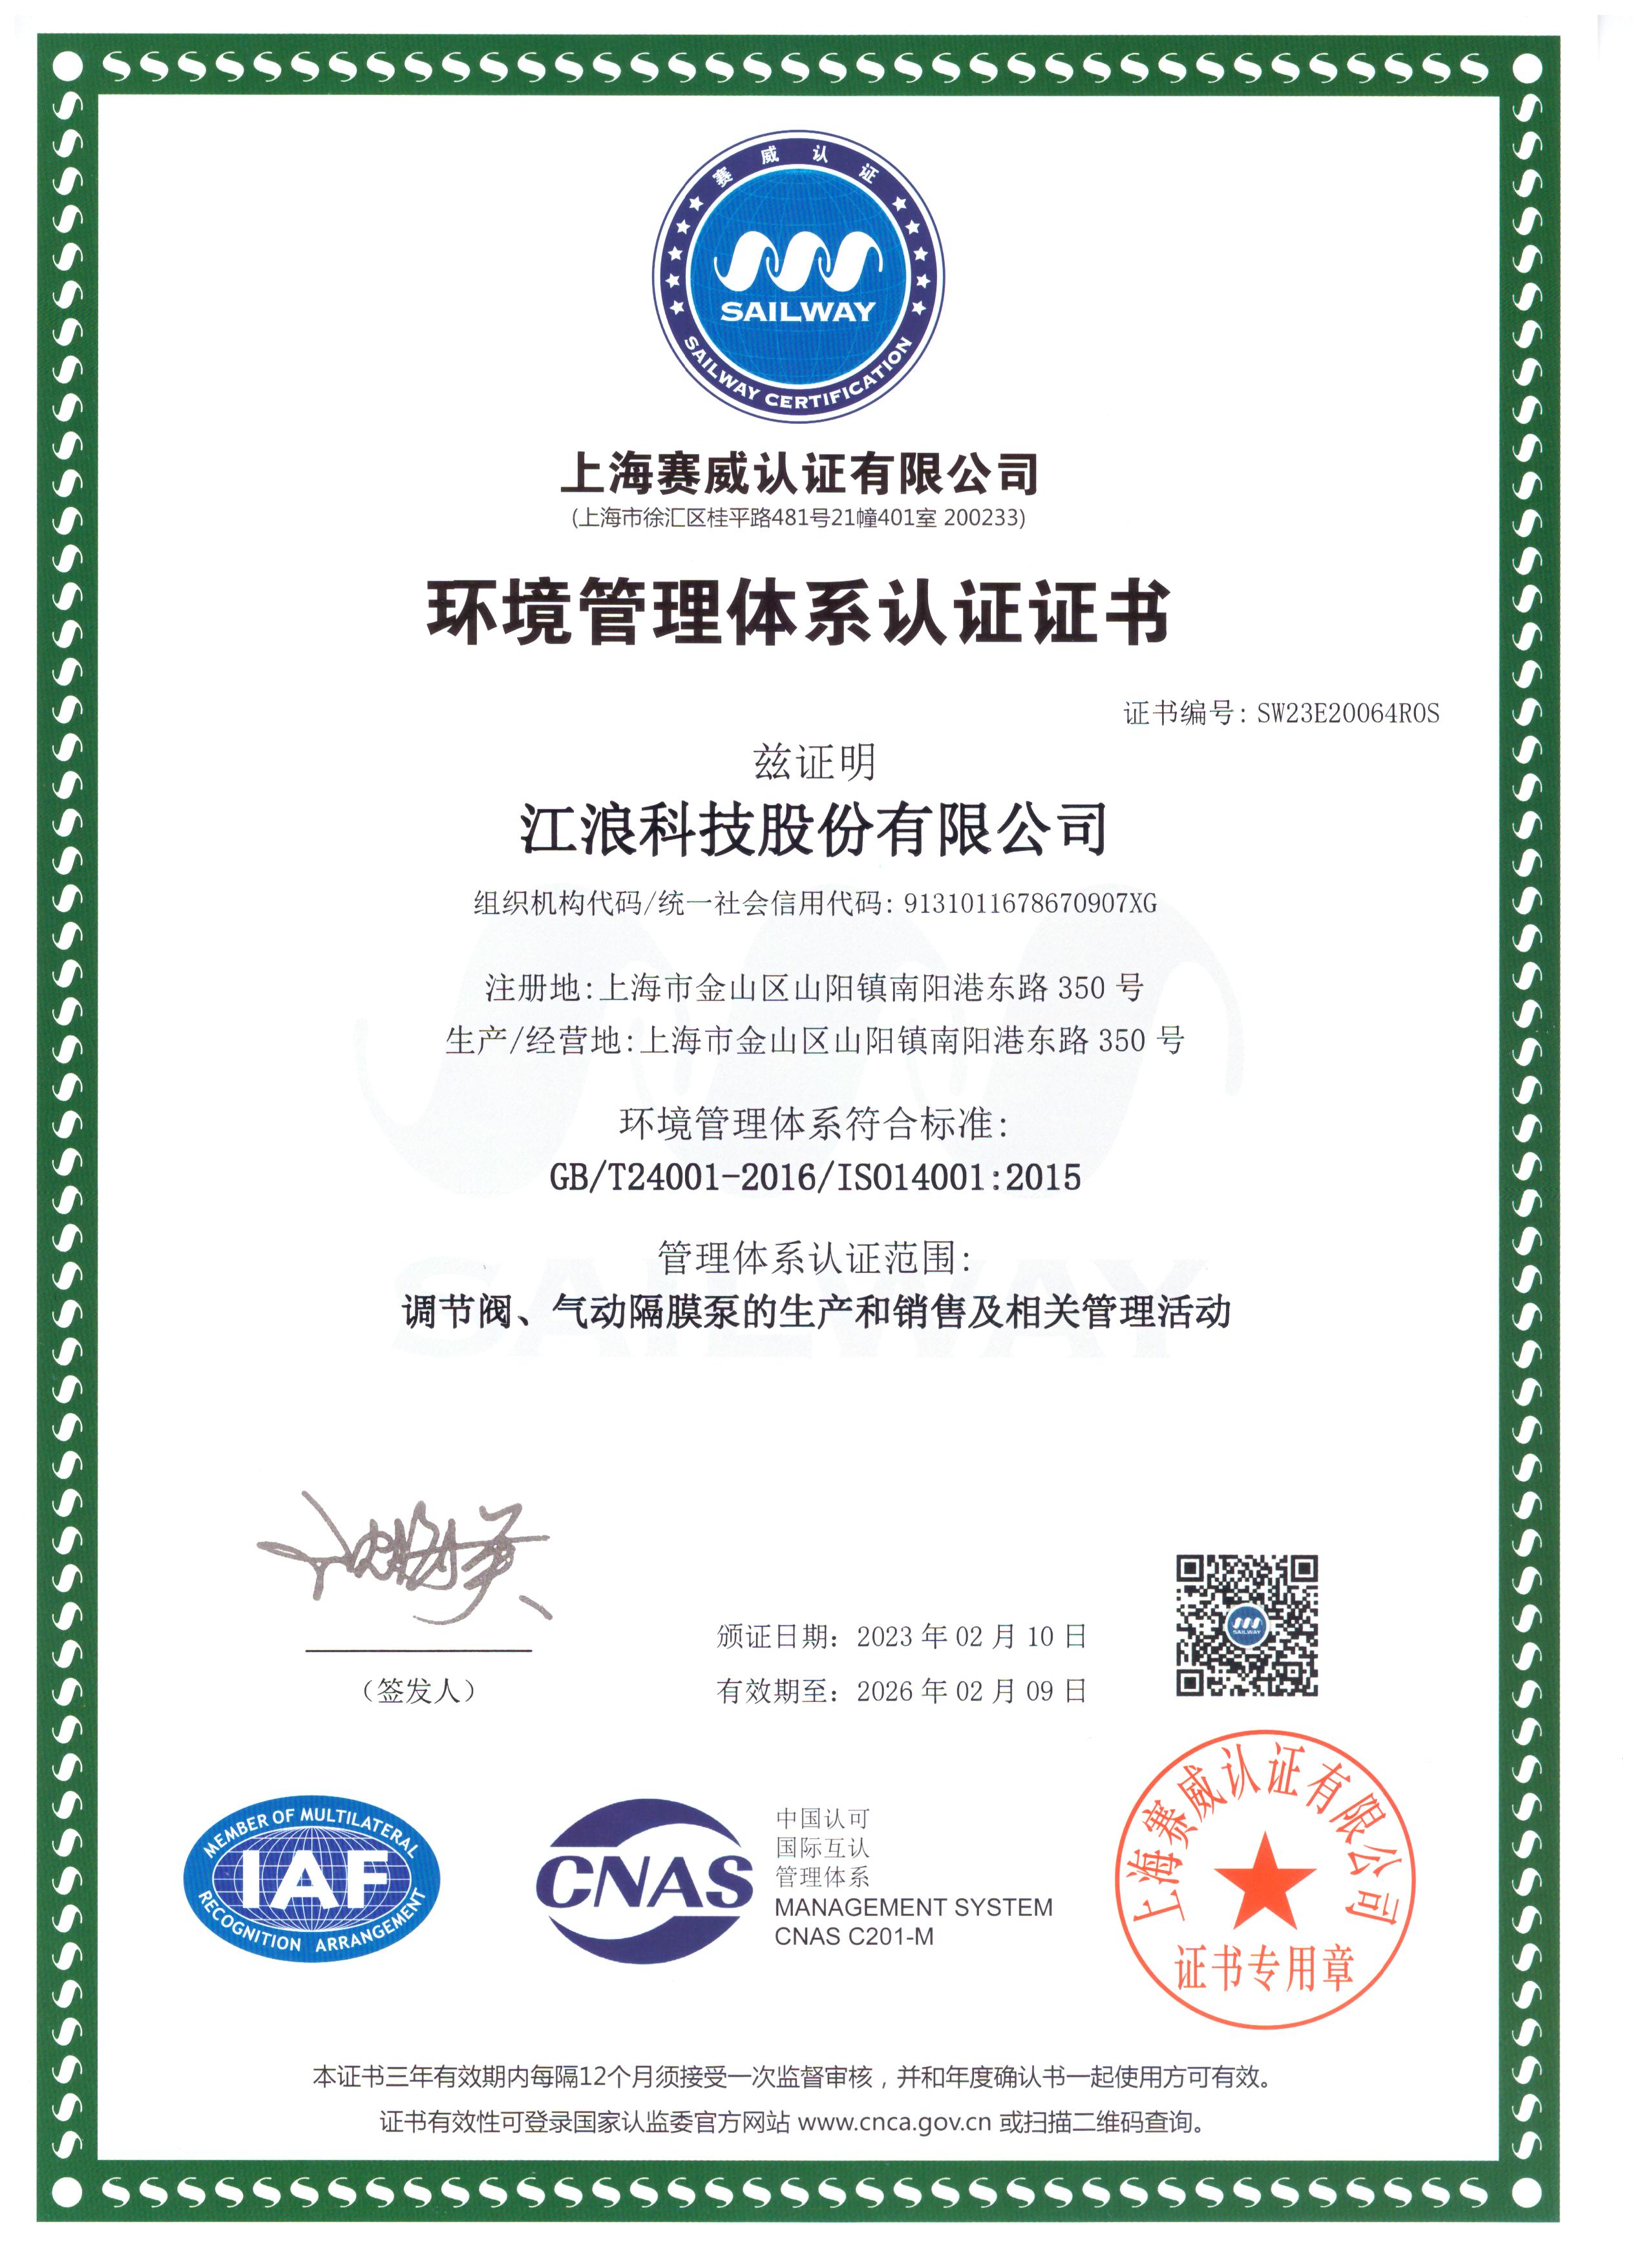 江浪科技 環境管理體系認證